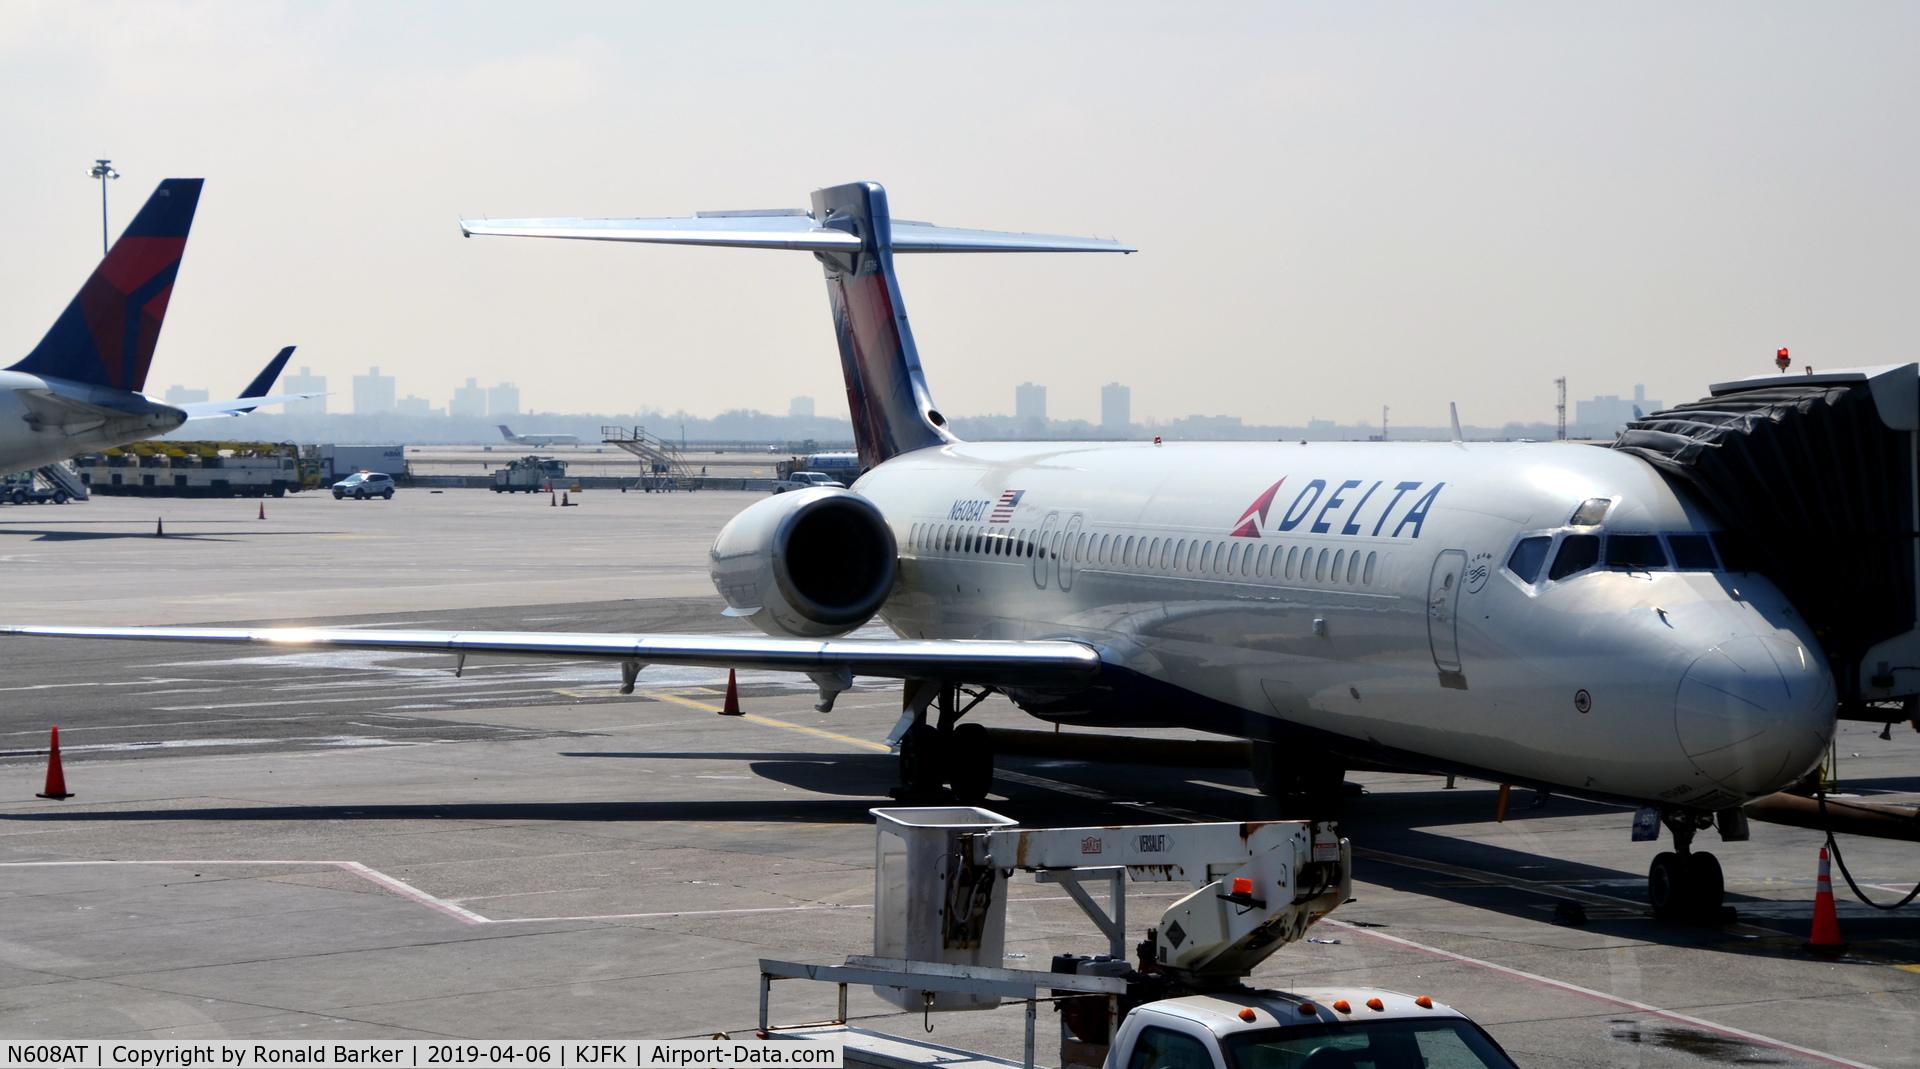 N608AT, 2000 Boeing 717-200 C/N 55081, At the gate JFK